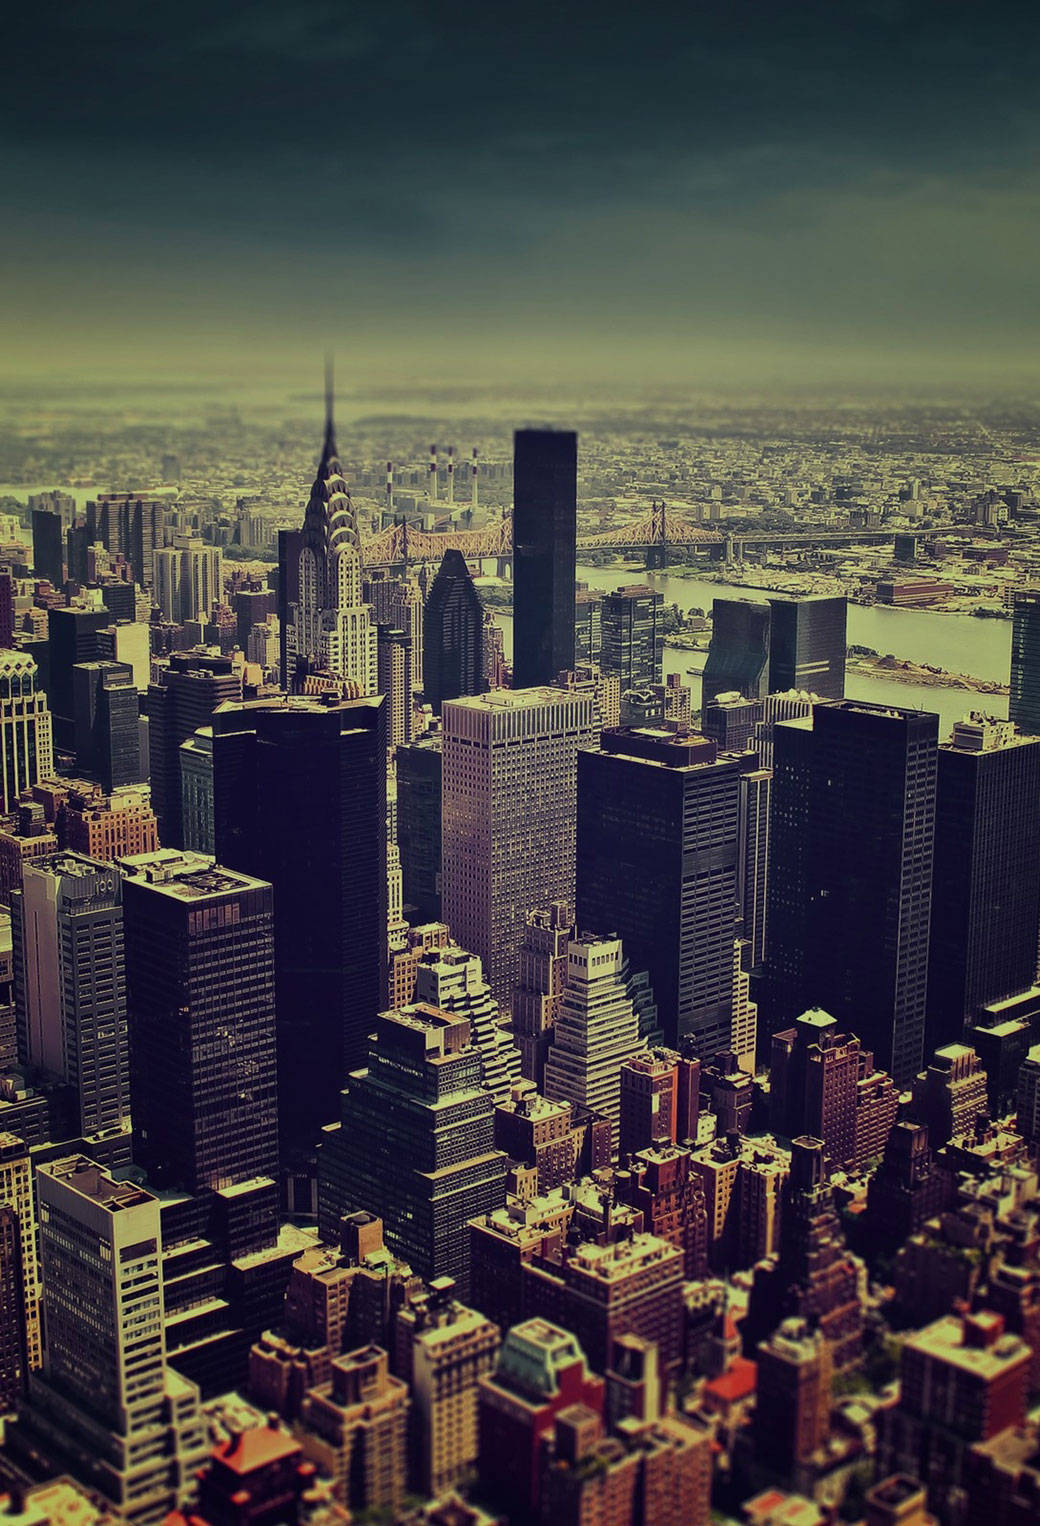 Genießensie Die Malerische Skyline Von New York City, Während Sie Ihr Iphone Verwenden. Wallpaper